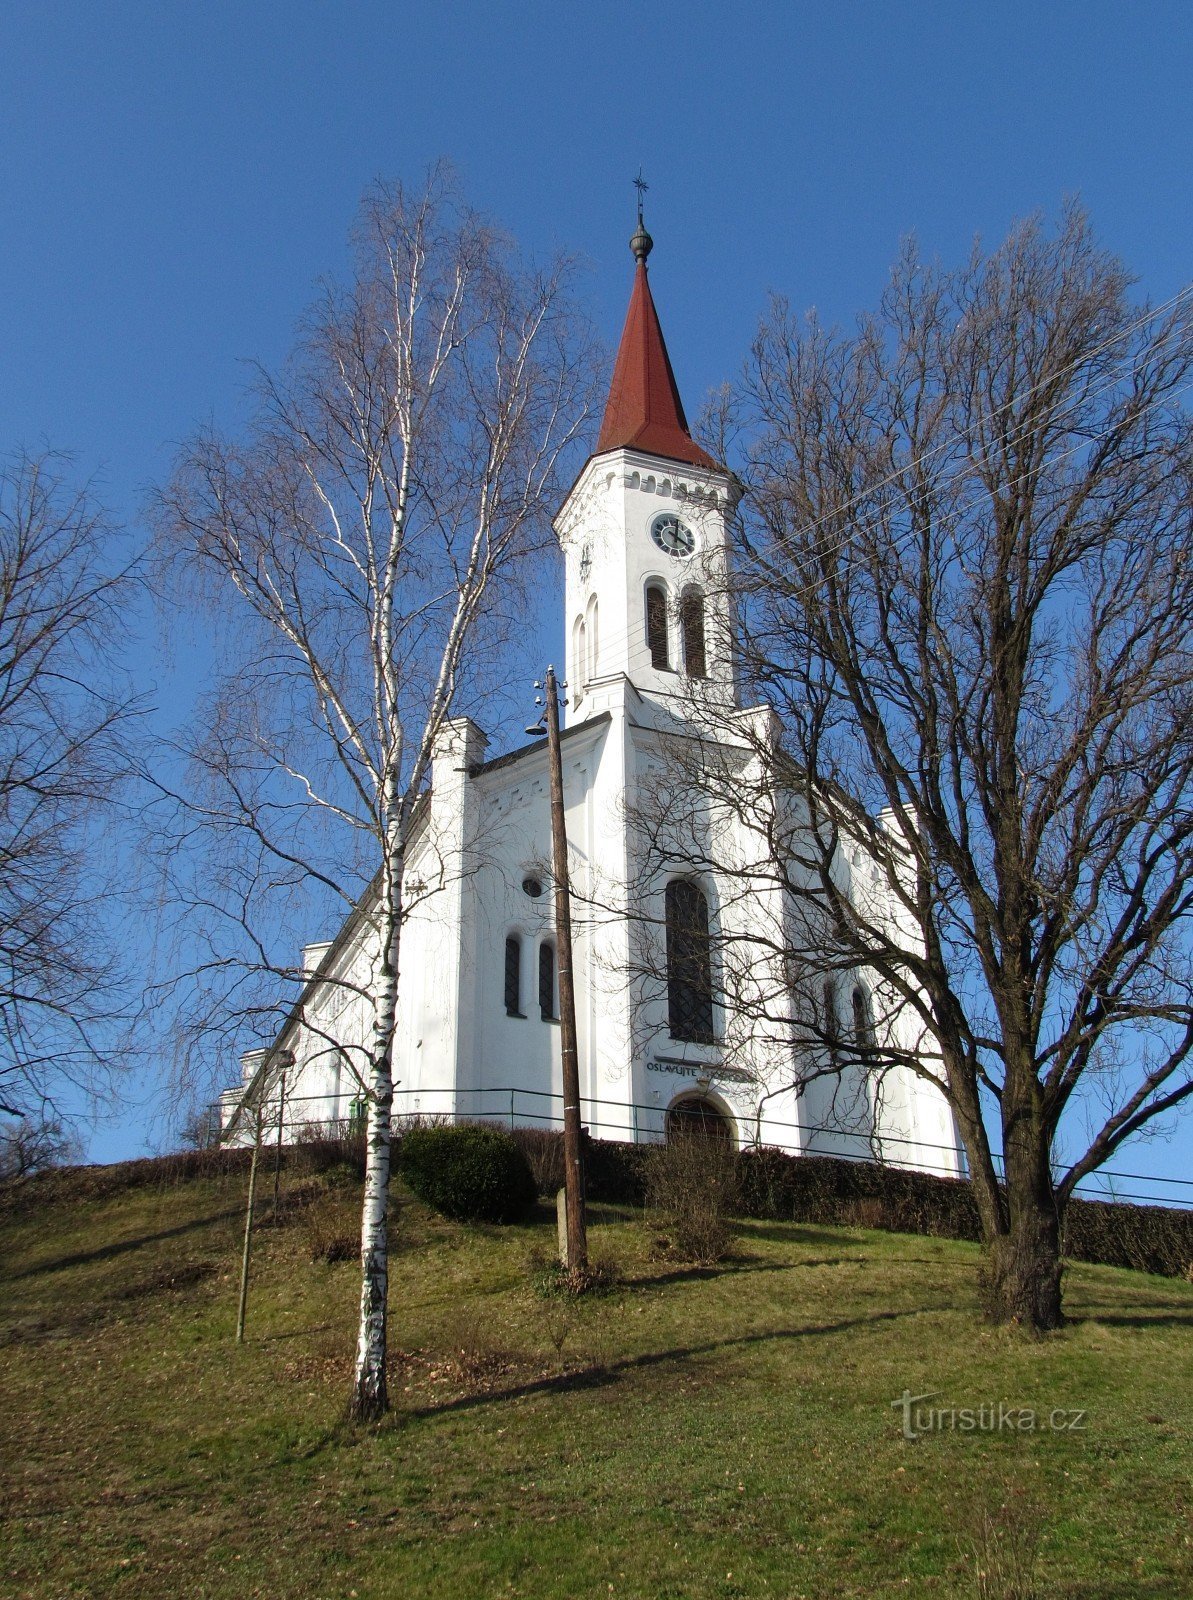 Zádveřice-Raková - chiesa evangelica